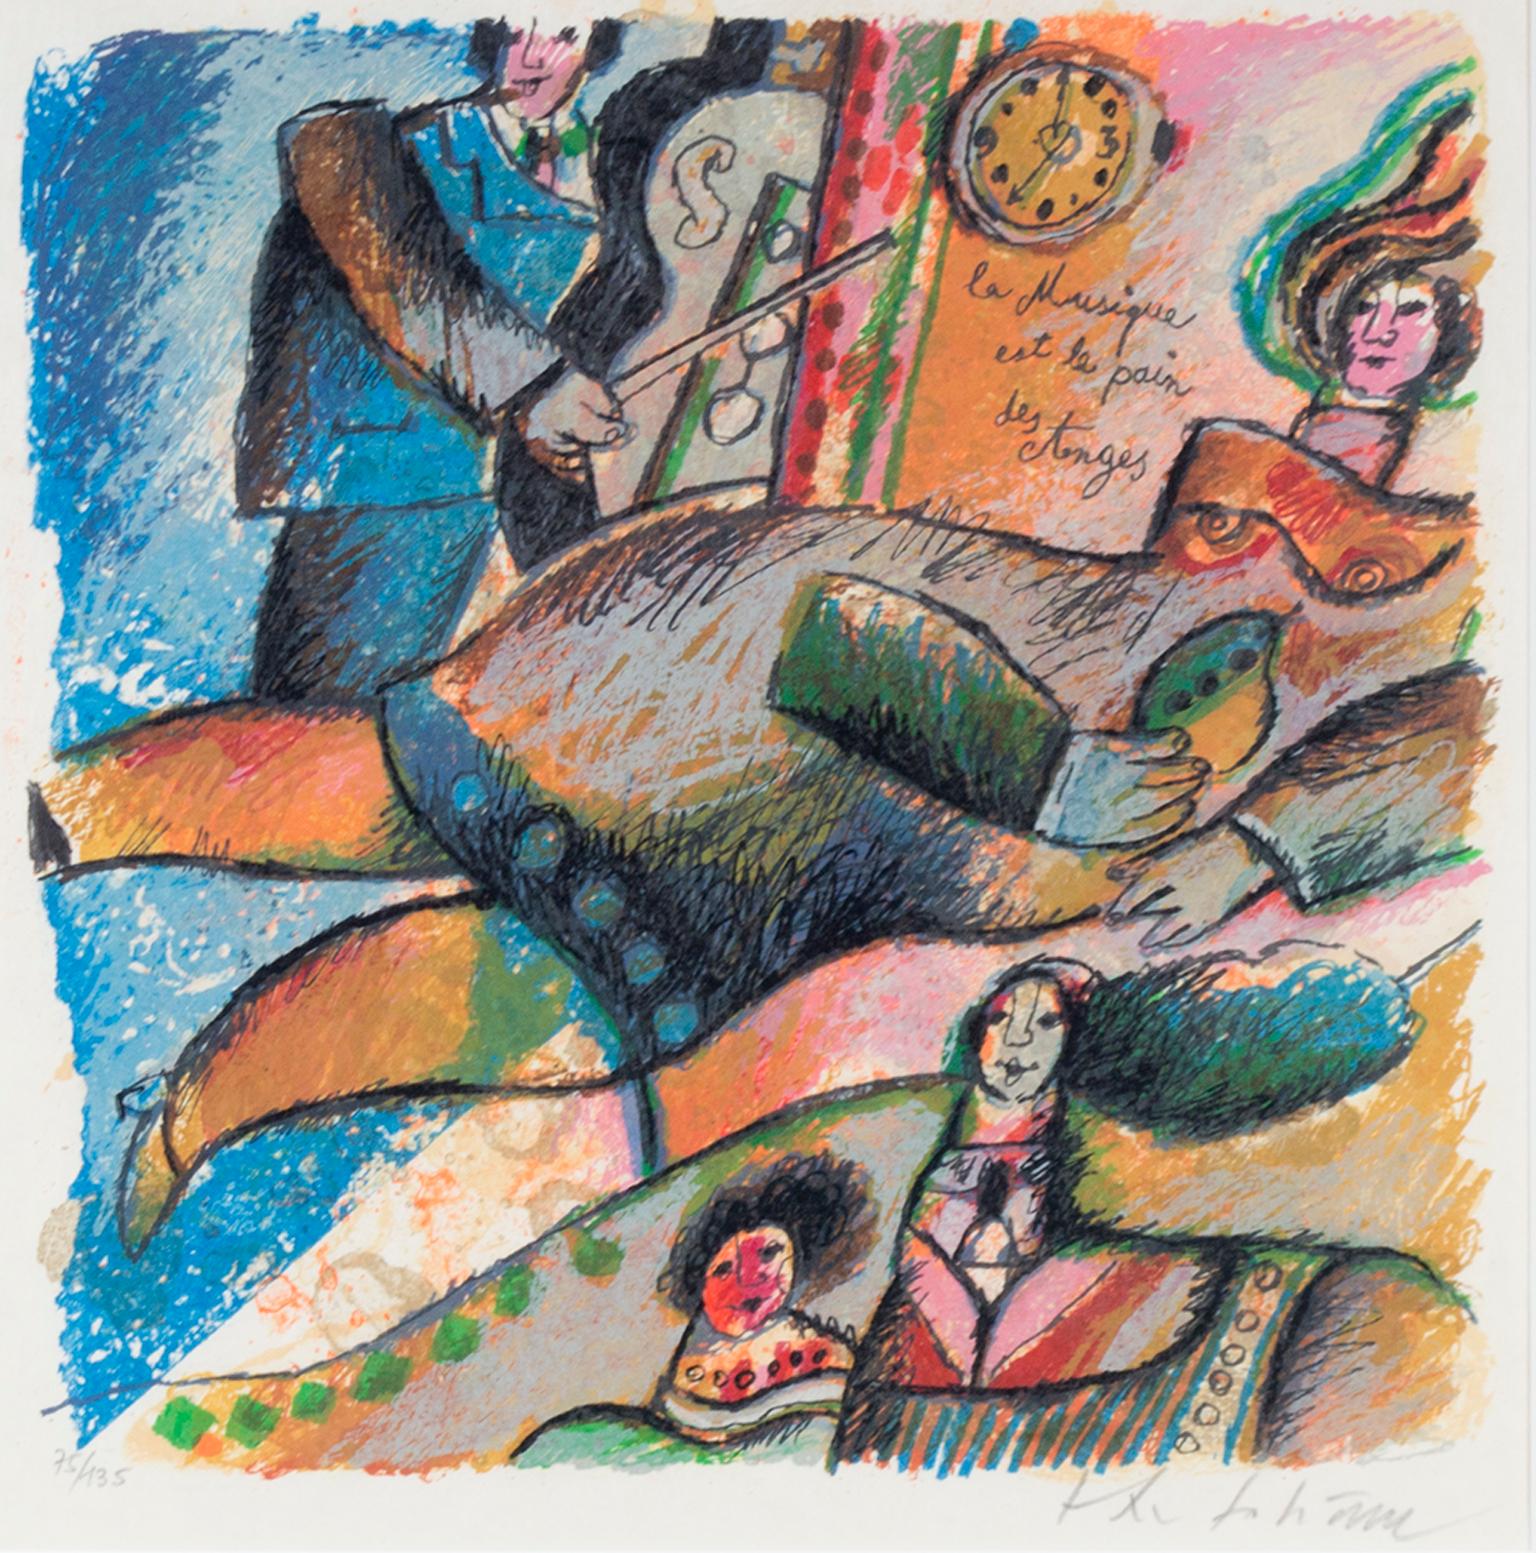 "La Musique est le Pain des Anges, " Color Lithograph signed by Theo Tobiasse